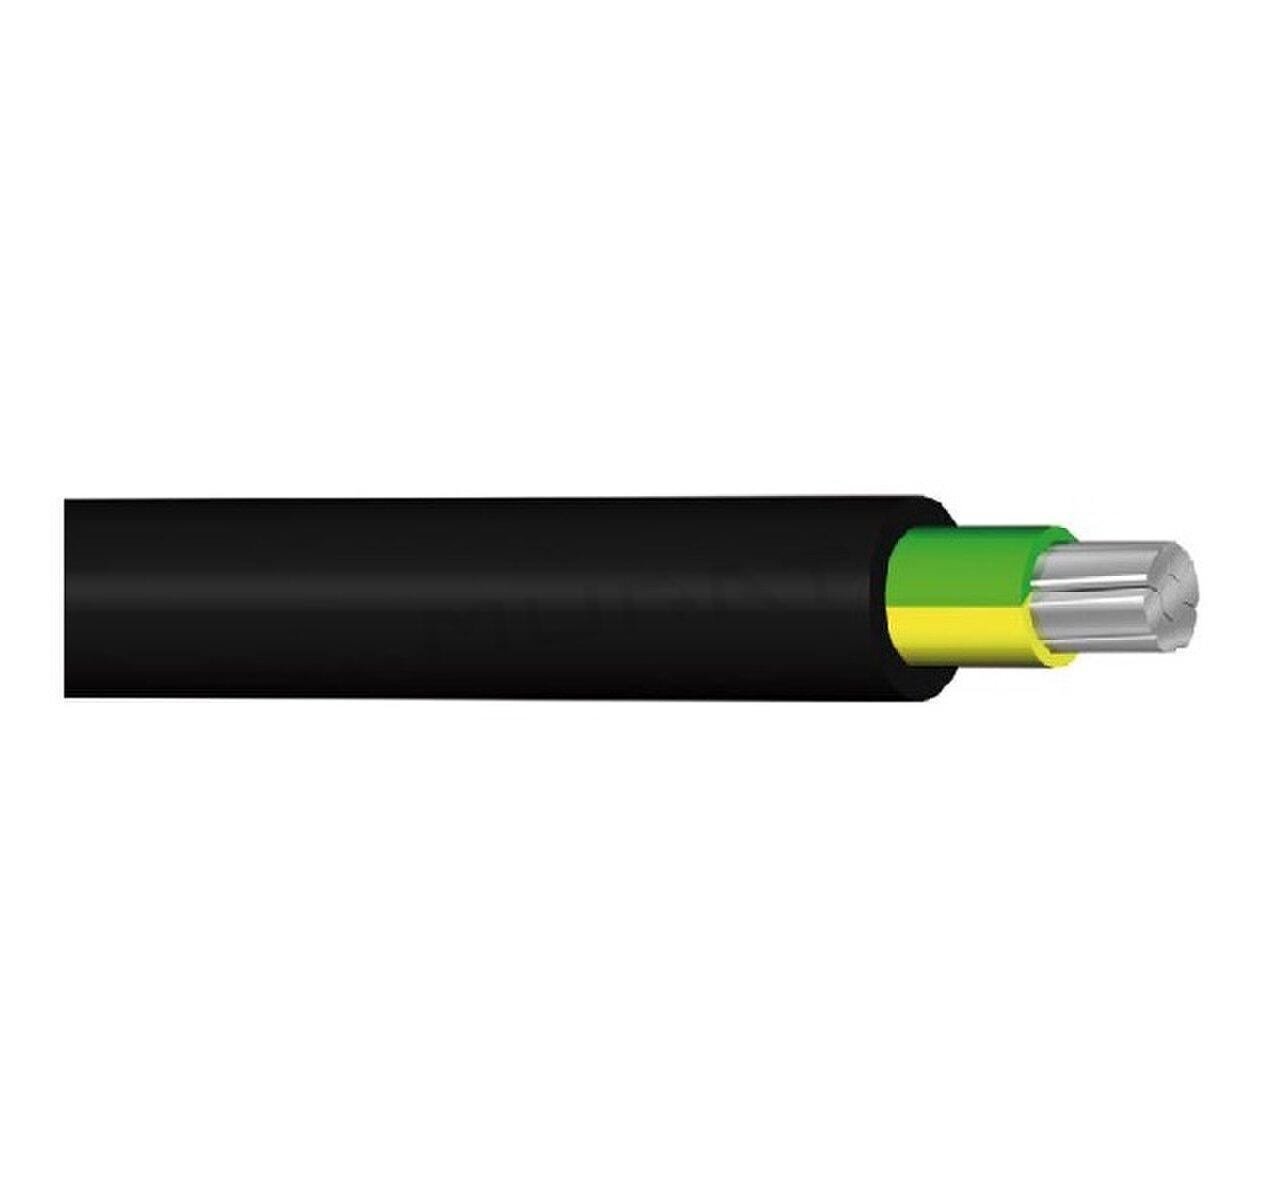 Kábel 1-AYY 1x25 mm2 žlto-zelený silový